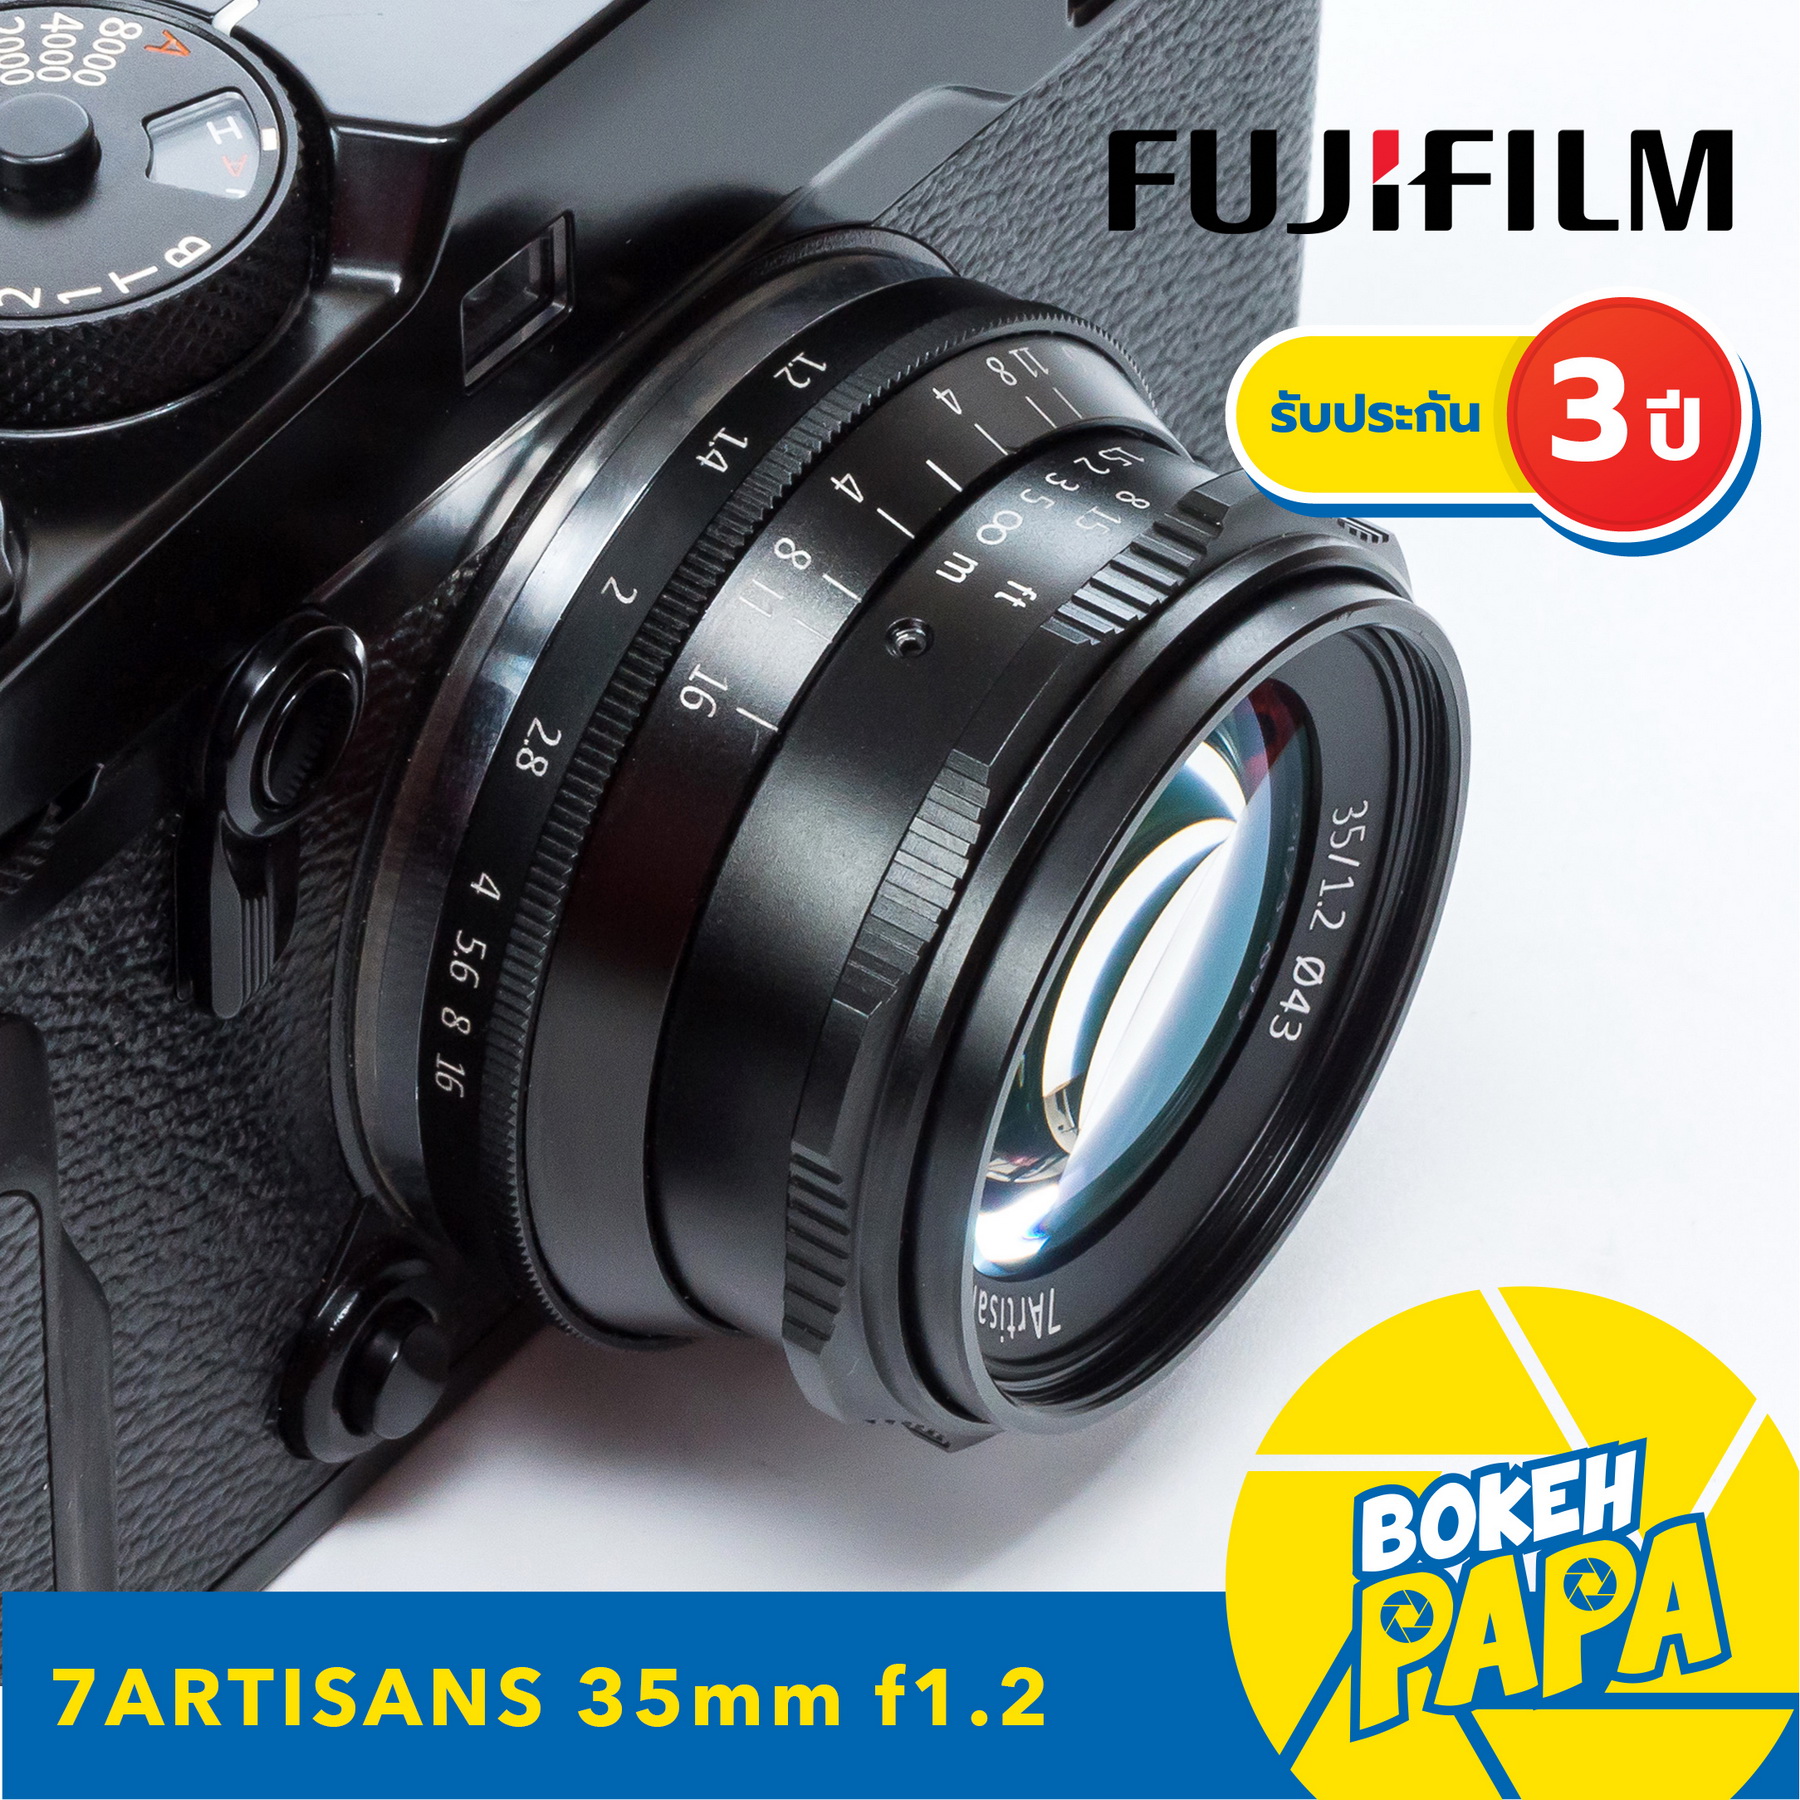 7Artisans 35mm F1.2 เลนส์มือหมุน สำหรับใส่กล้อง Fuji Mirrorless ได้ทุกรุ่น